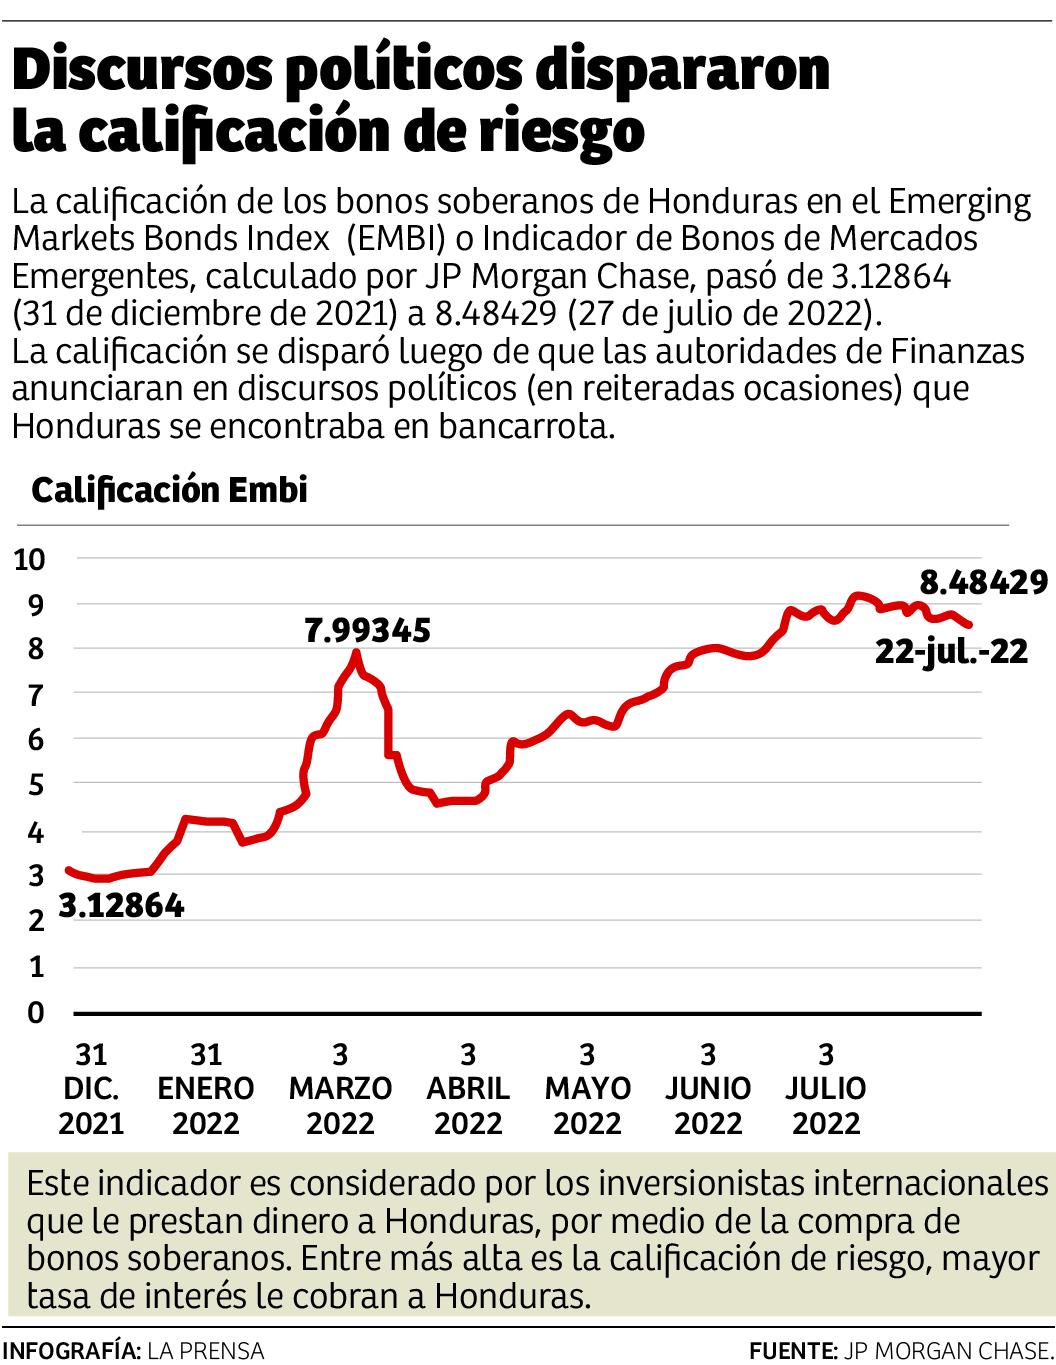 A pesar de la “incertidumbre”, EEUU llama a invertir en Honduras